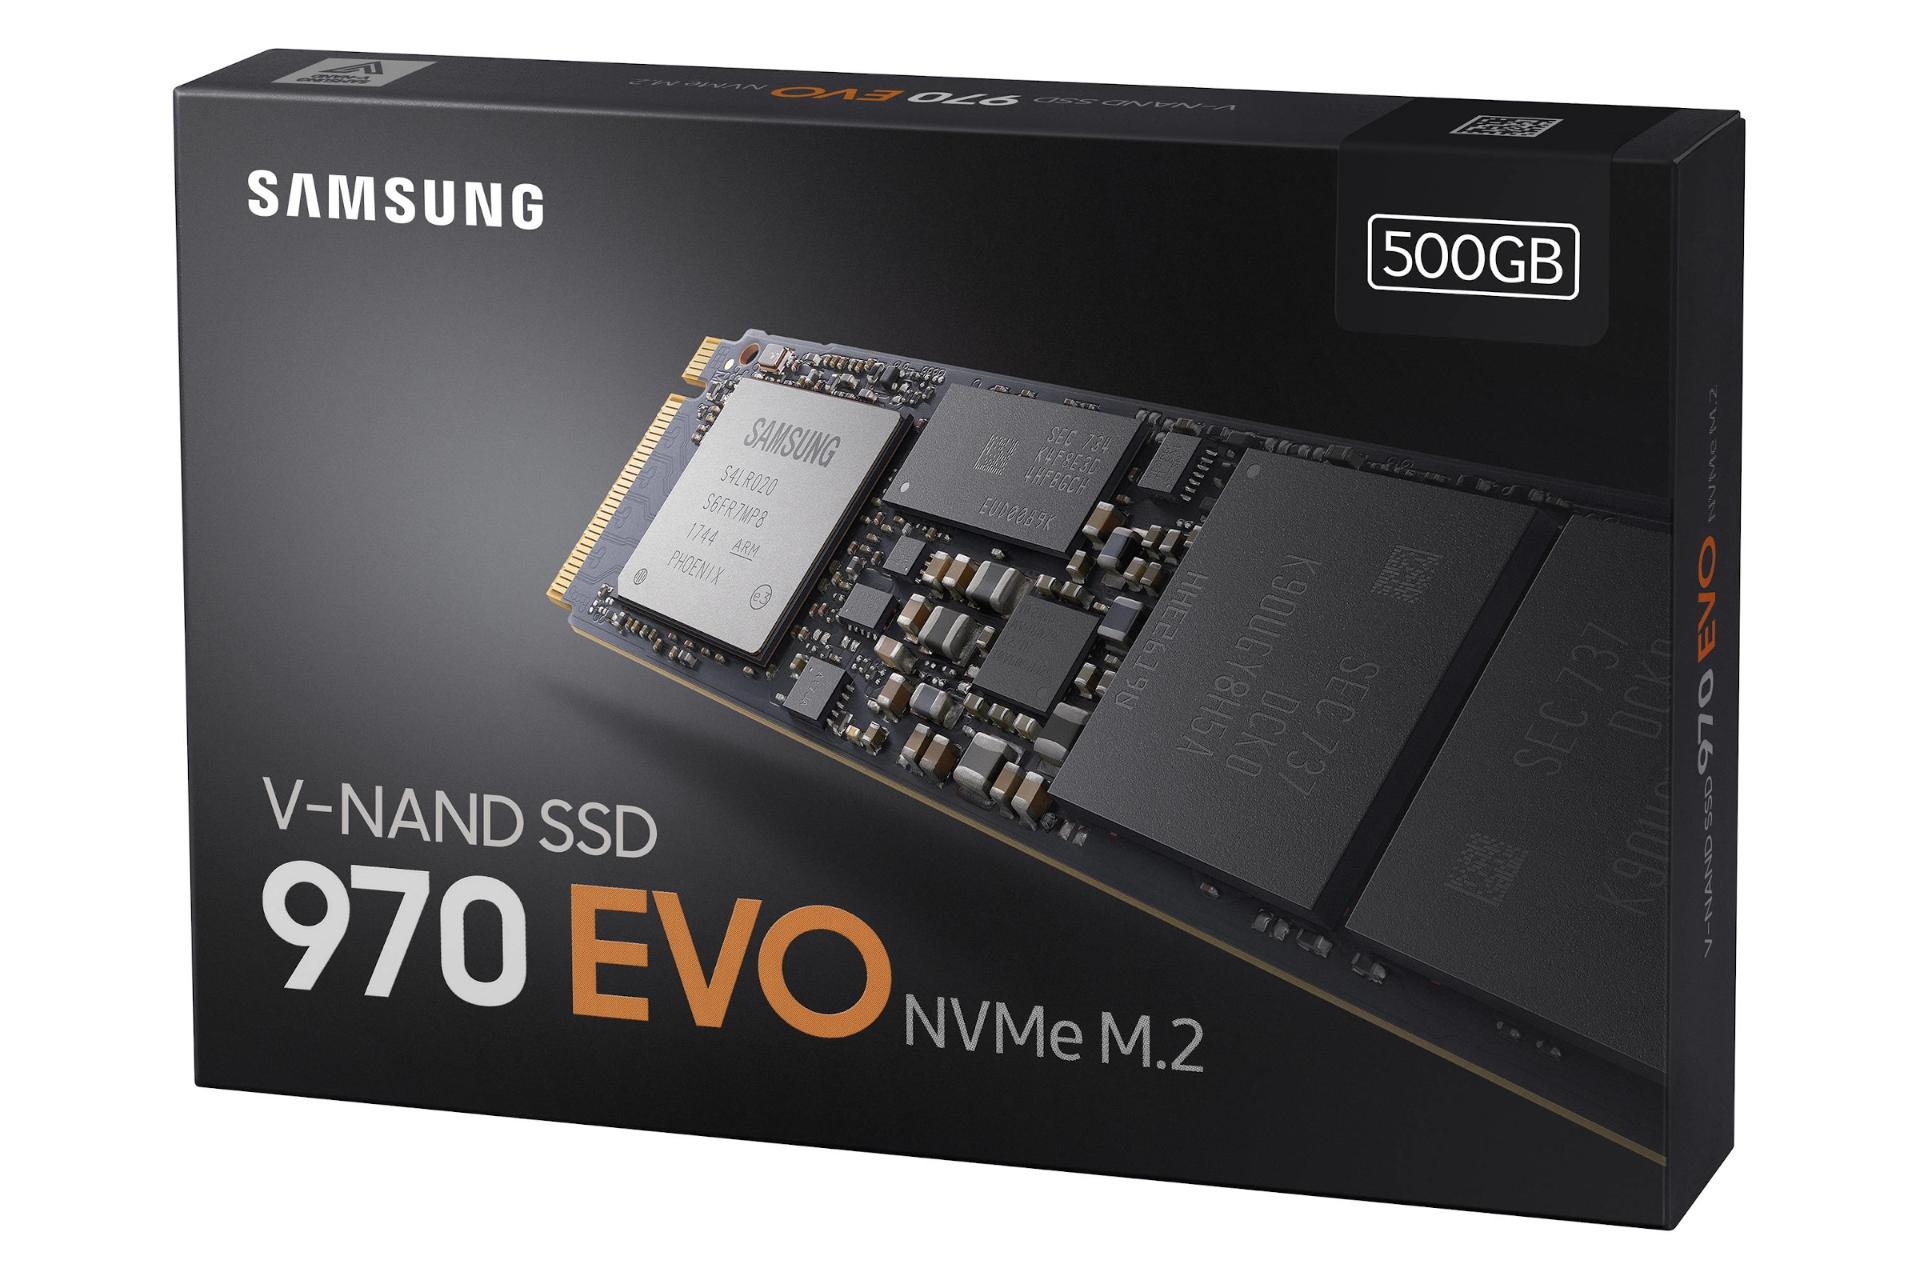 جعبه SSD سامسونگ Samsung 970 EVO NVMe M.2 500GB ظرفیت 500 گیگابایت